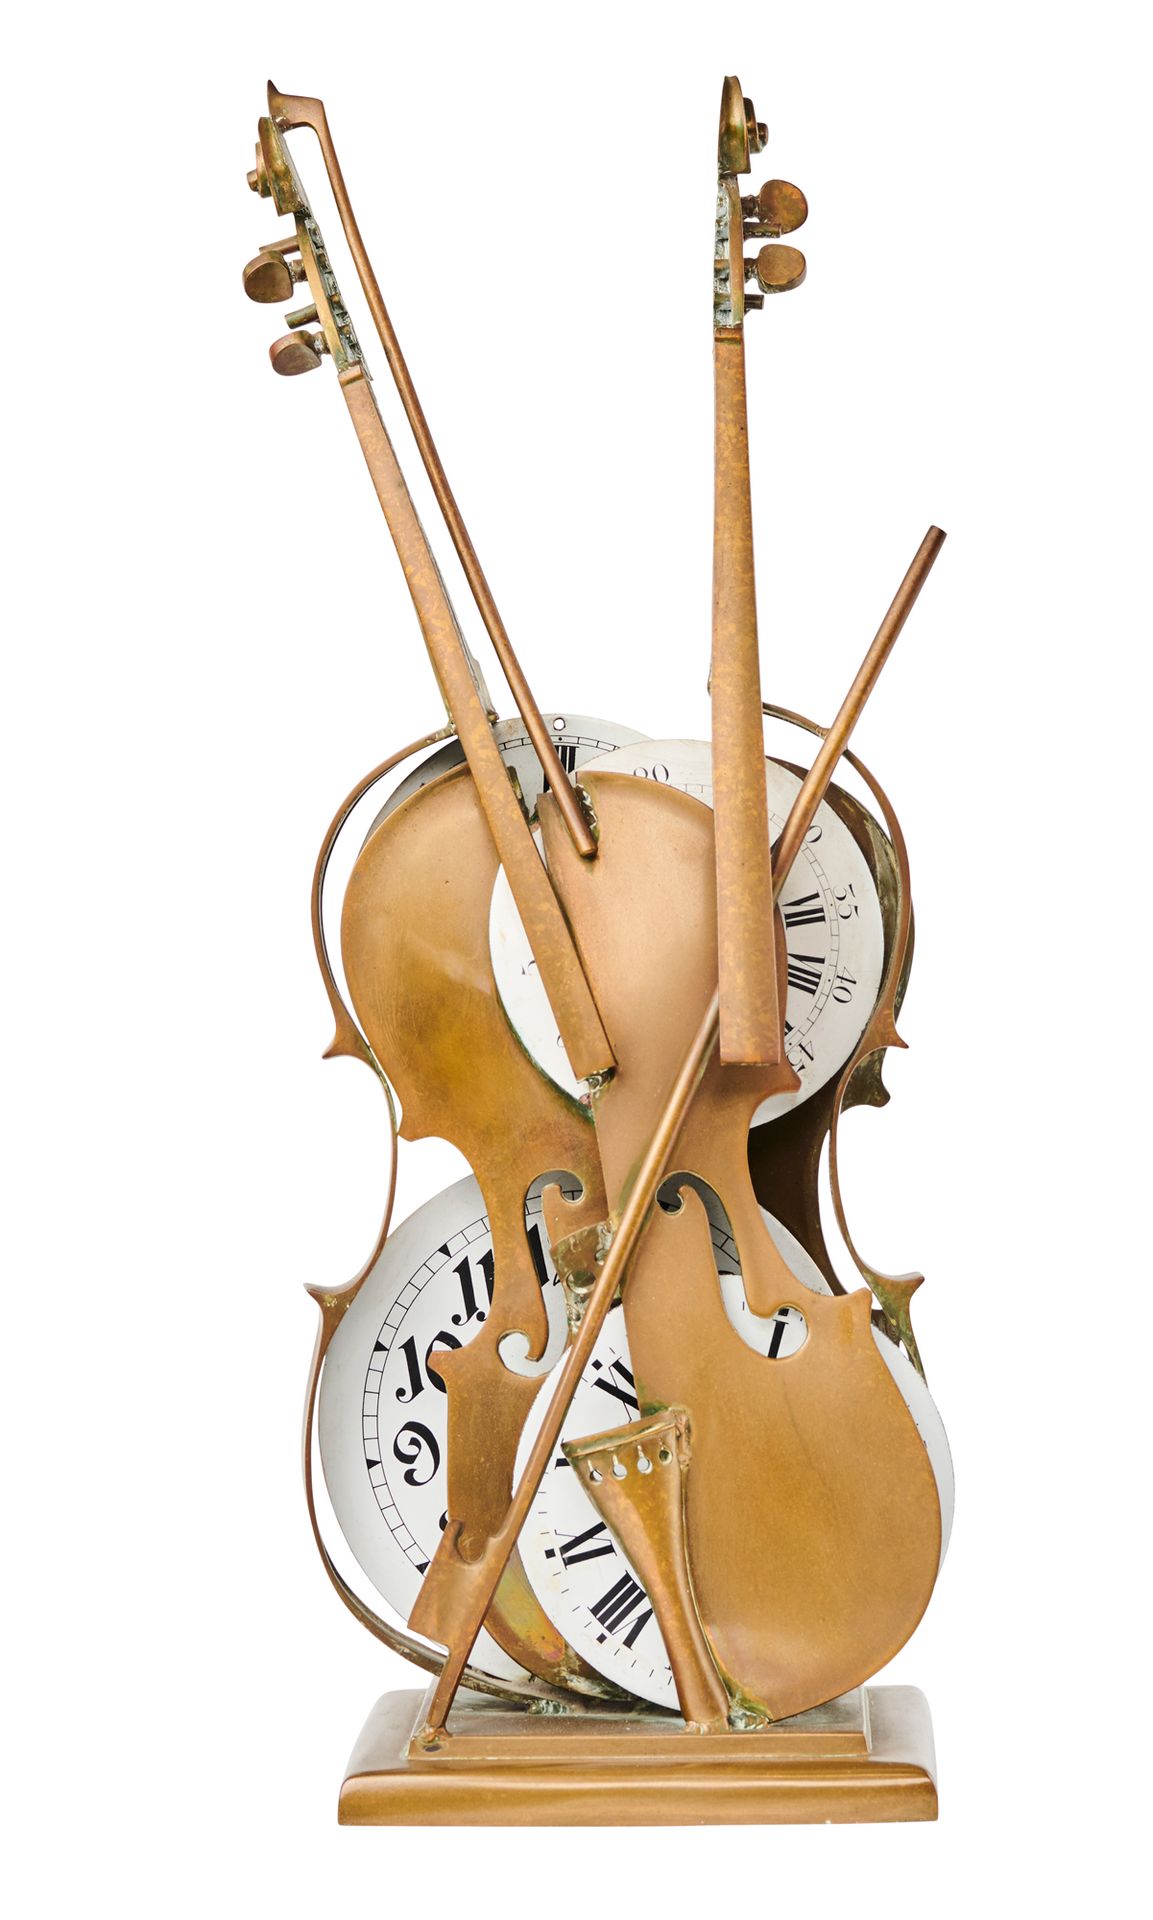 ARMAN 1928-2005 VIOLÍN Y RELOJES 

Violín de bronce y esferas de reloj reensambl&hellip;